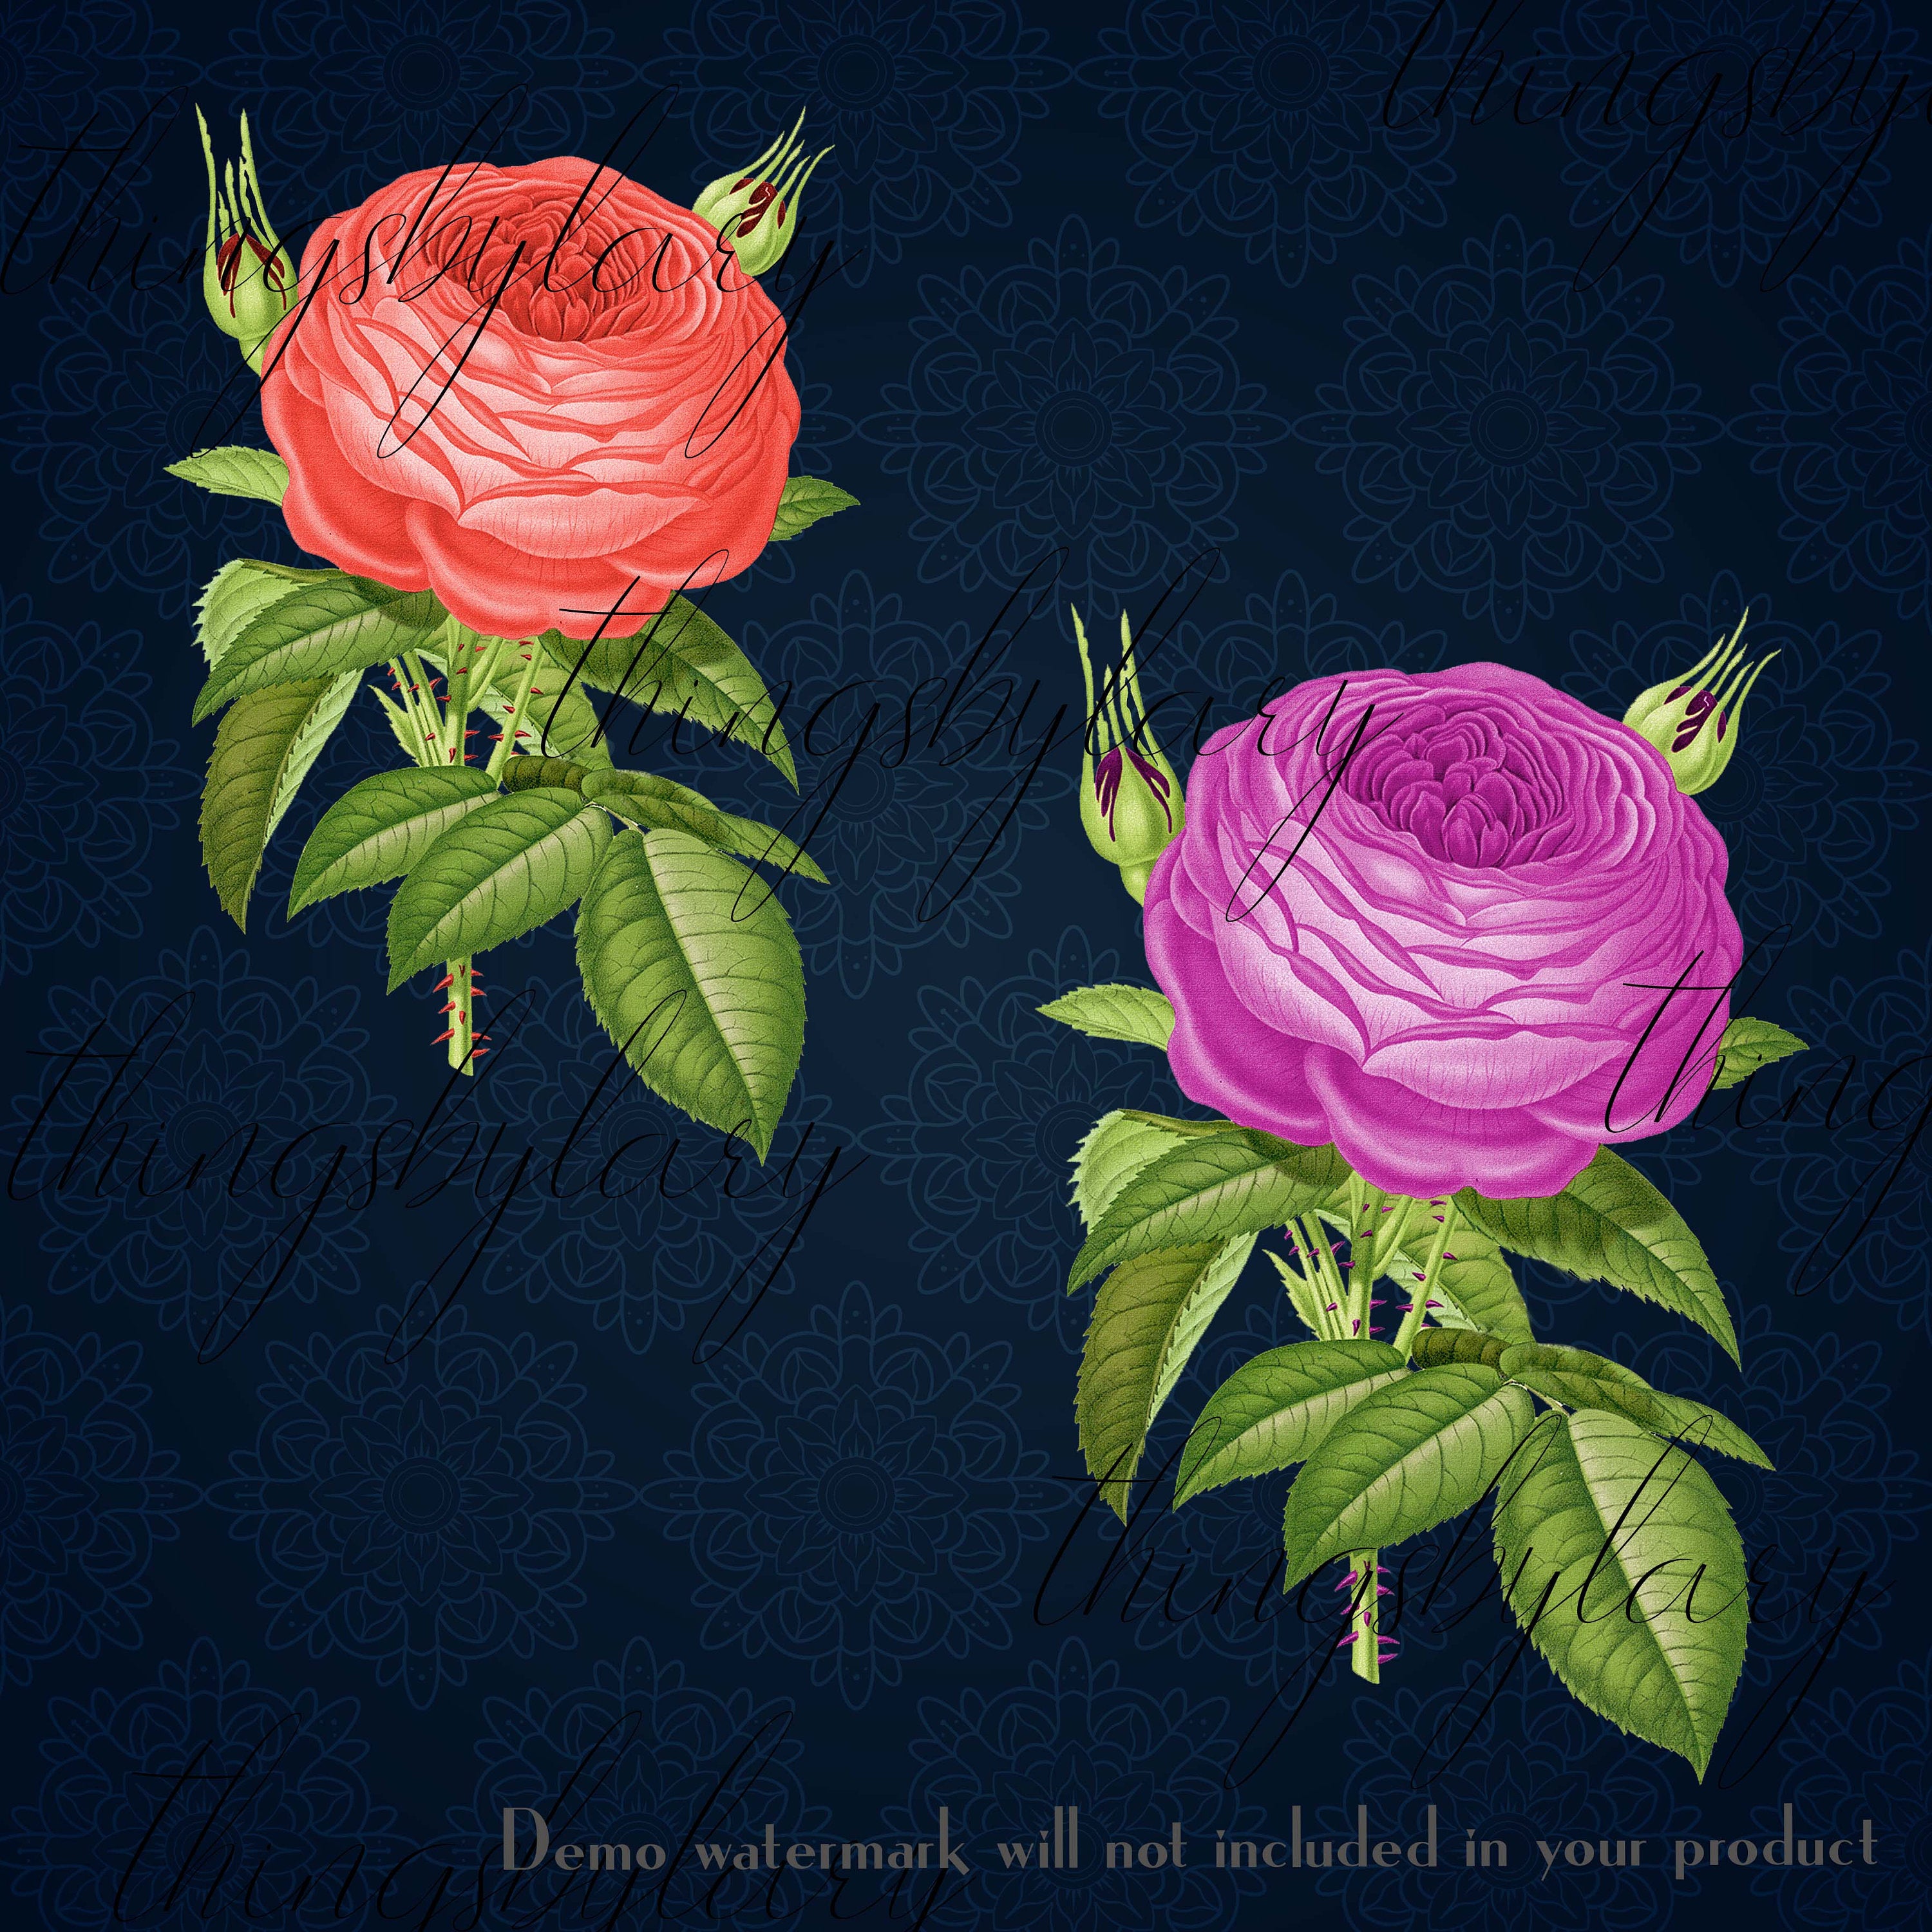 100 Antique Rose Flower Digital Images PNG 300 Dpi Instant Download Commercial Use Planner Clip art Scrapbook Vintage Peony Wedding Rose